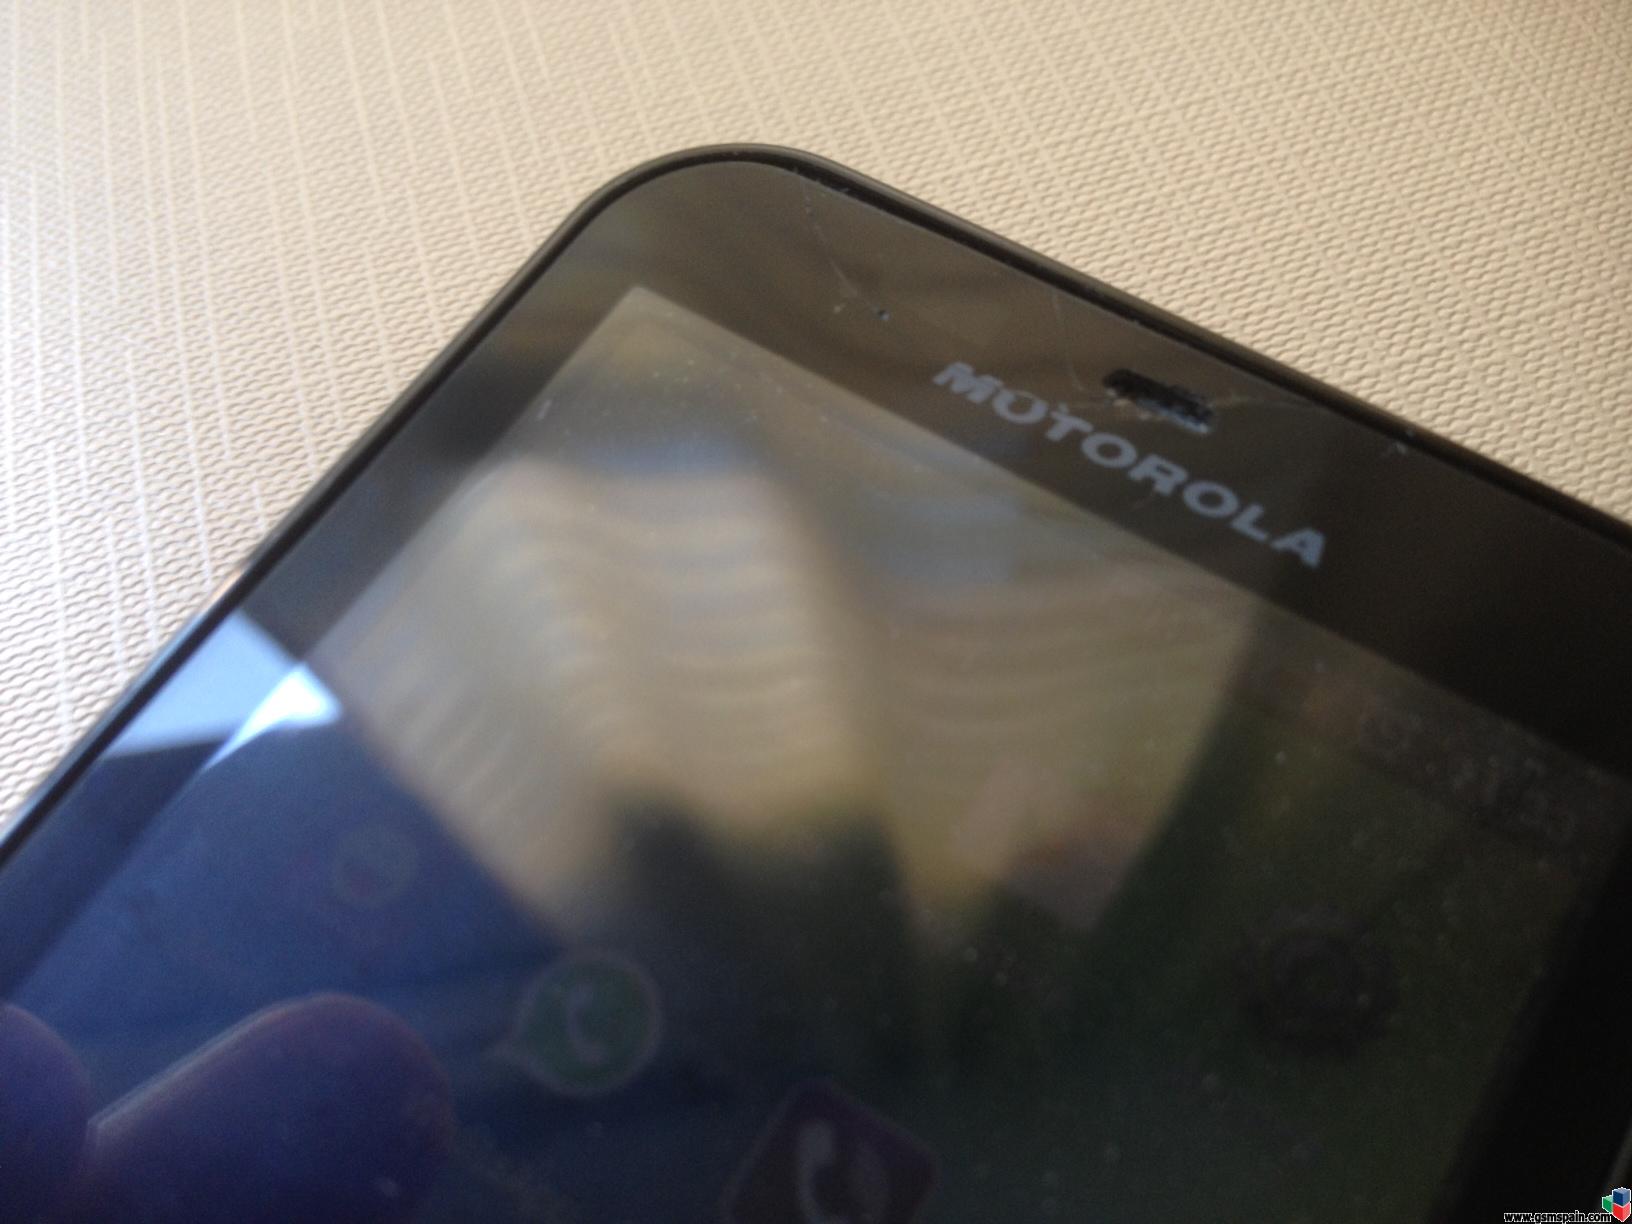 [CAMBIO] Motorola Defy liberado por BB